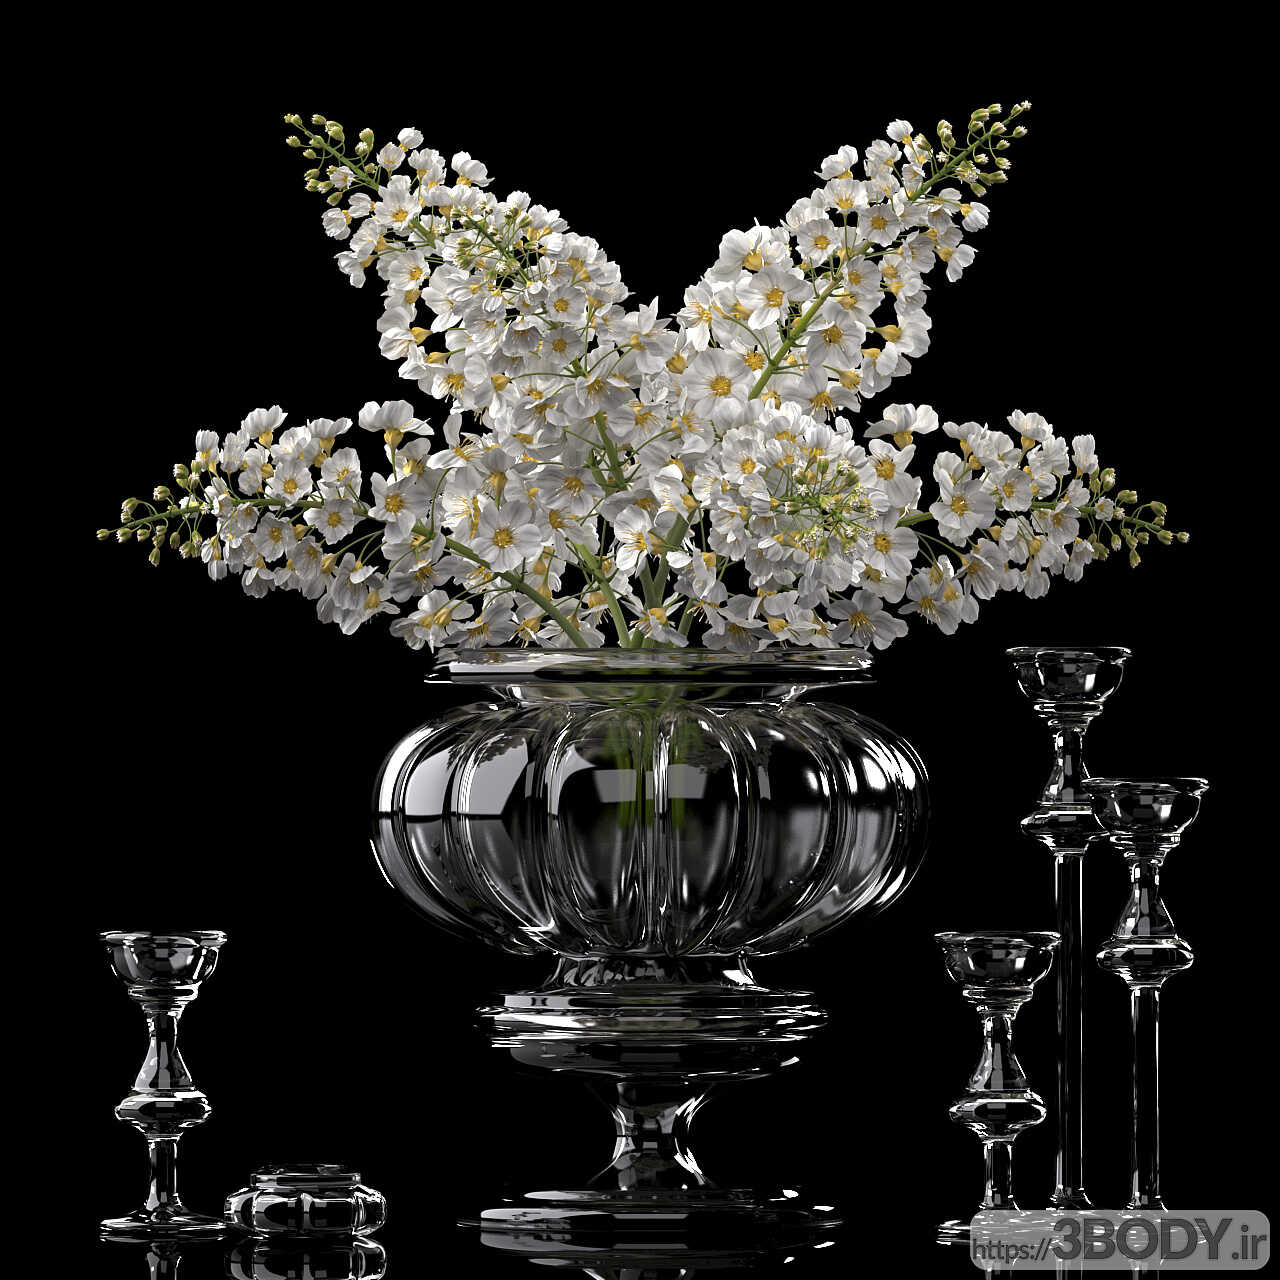 آبجکت سه بعدی دسته گل وگلدان تزئینی شیشه ای عکس 1